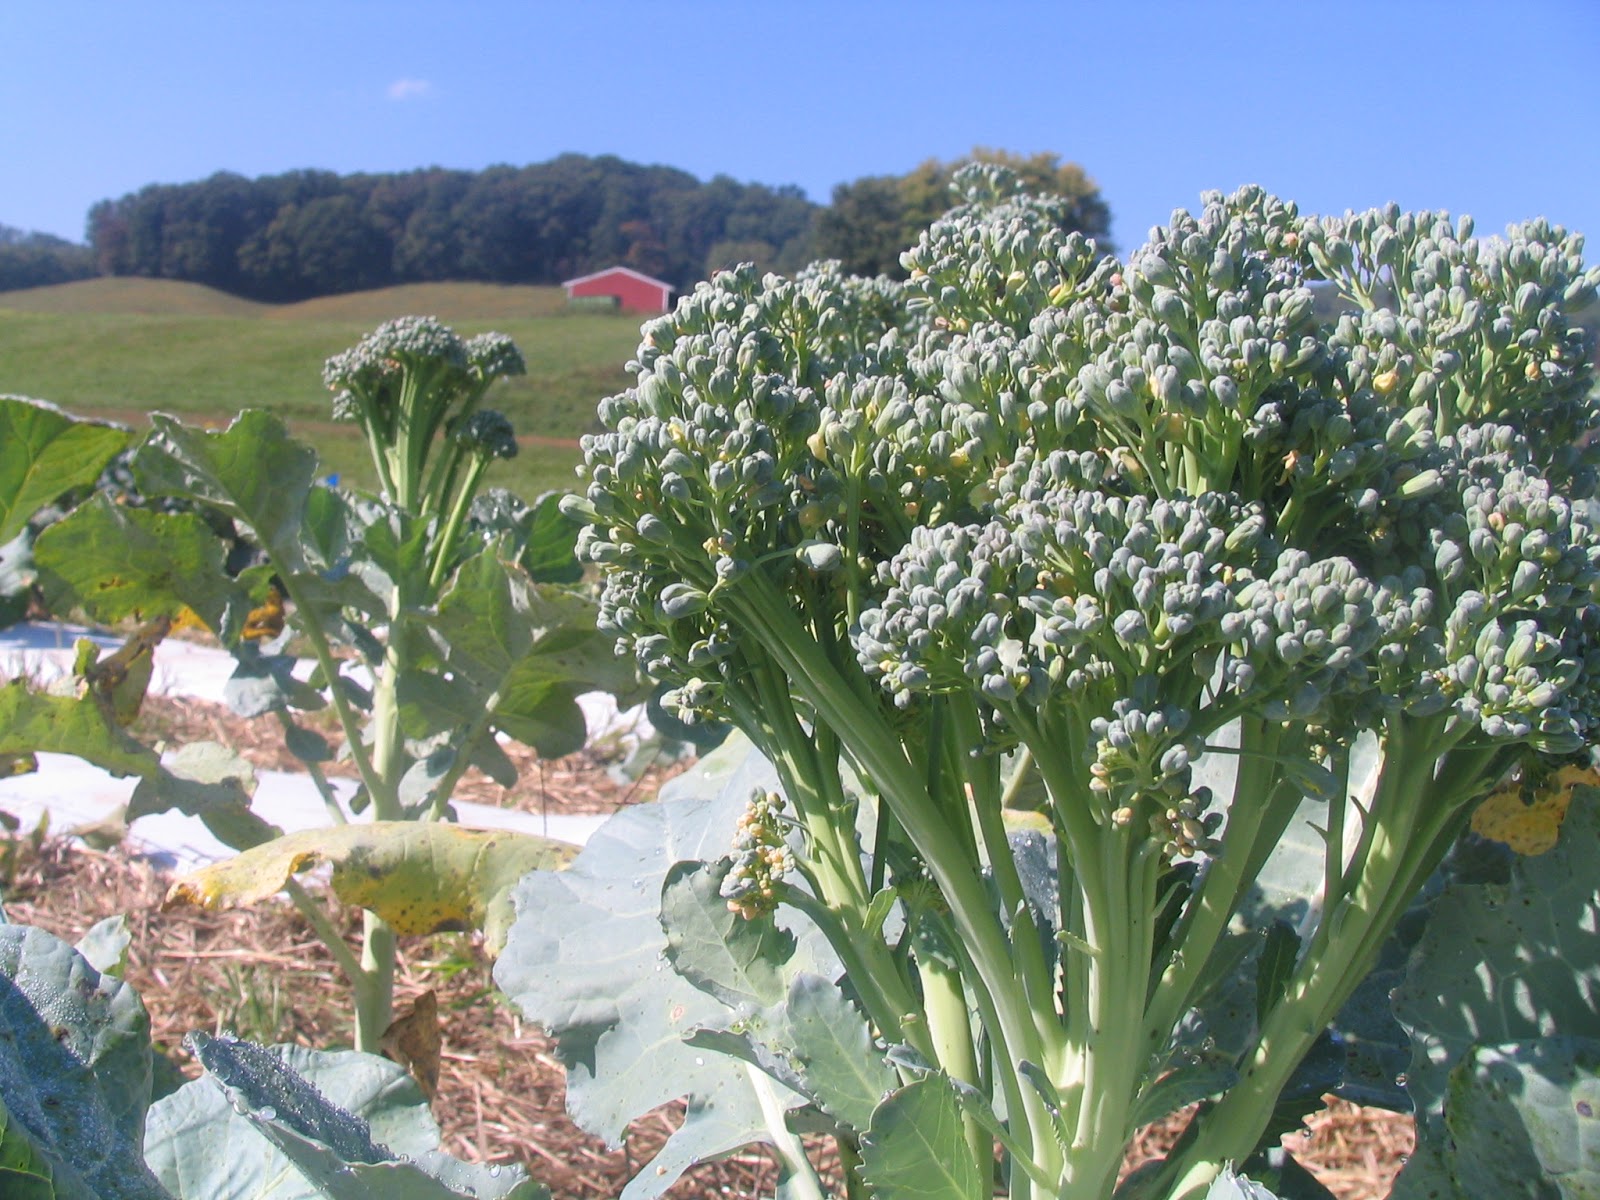 Di Cicco broccoli grown in 2012